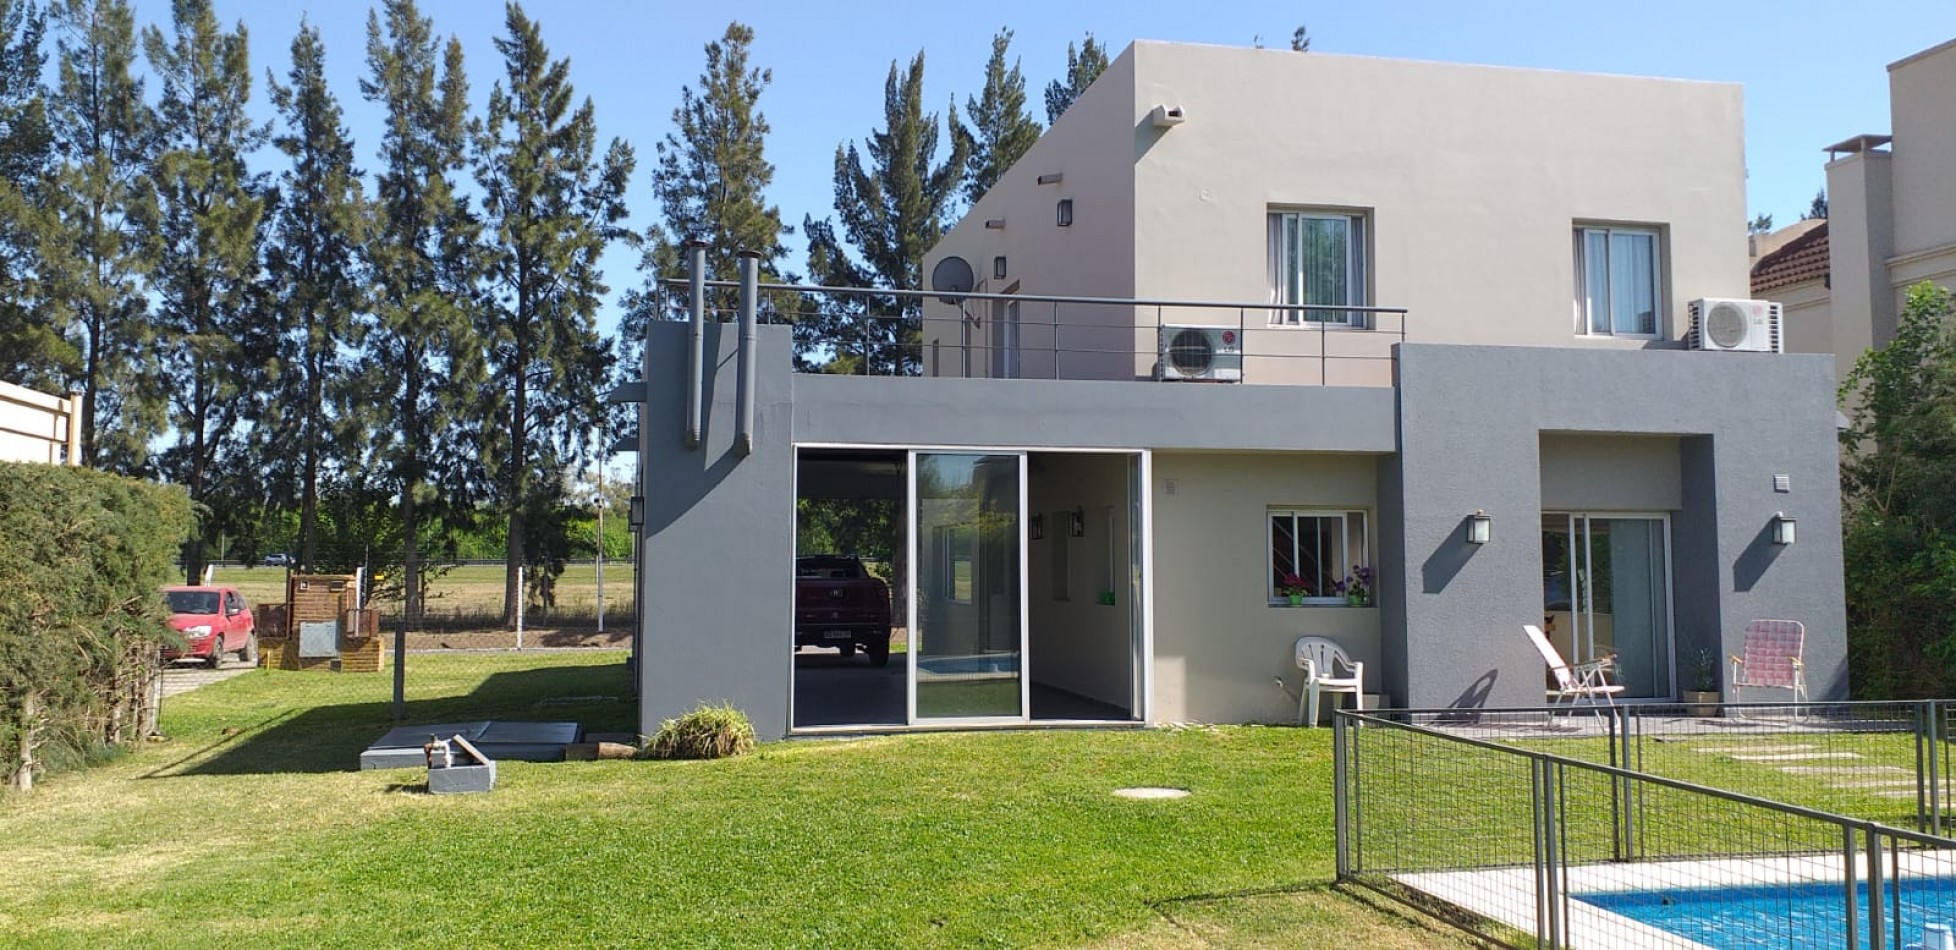 NUEVO VALOR! PERMUTA - Casa en venta en Country Altos del Sol - 4 ambientes!